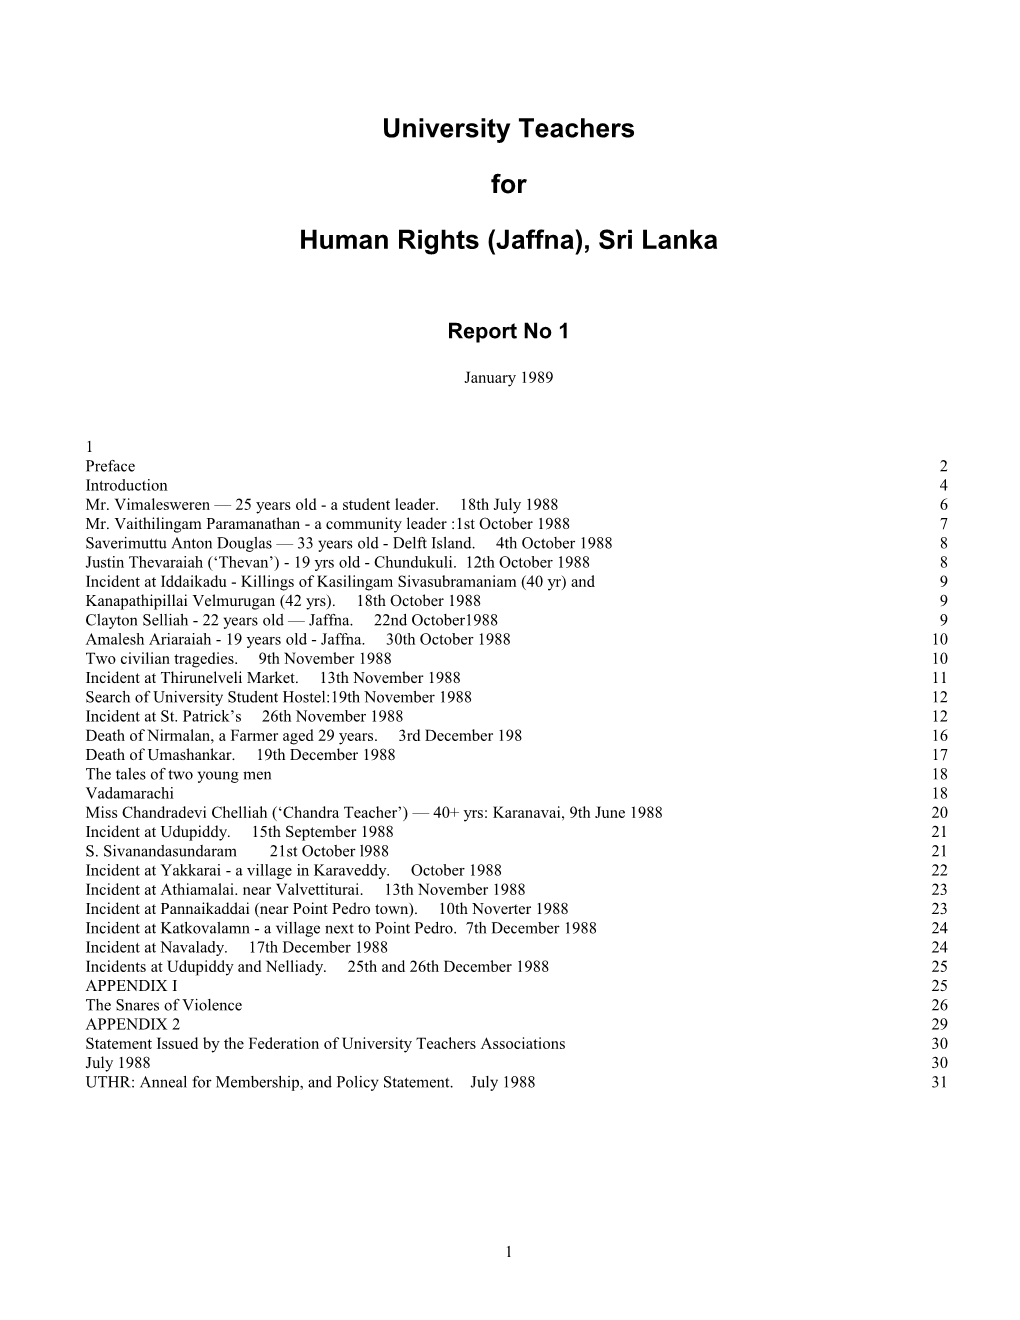 Human Rights (Jaffna), Sri Lanka